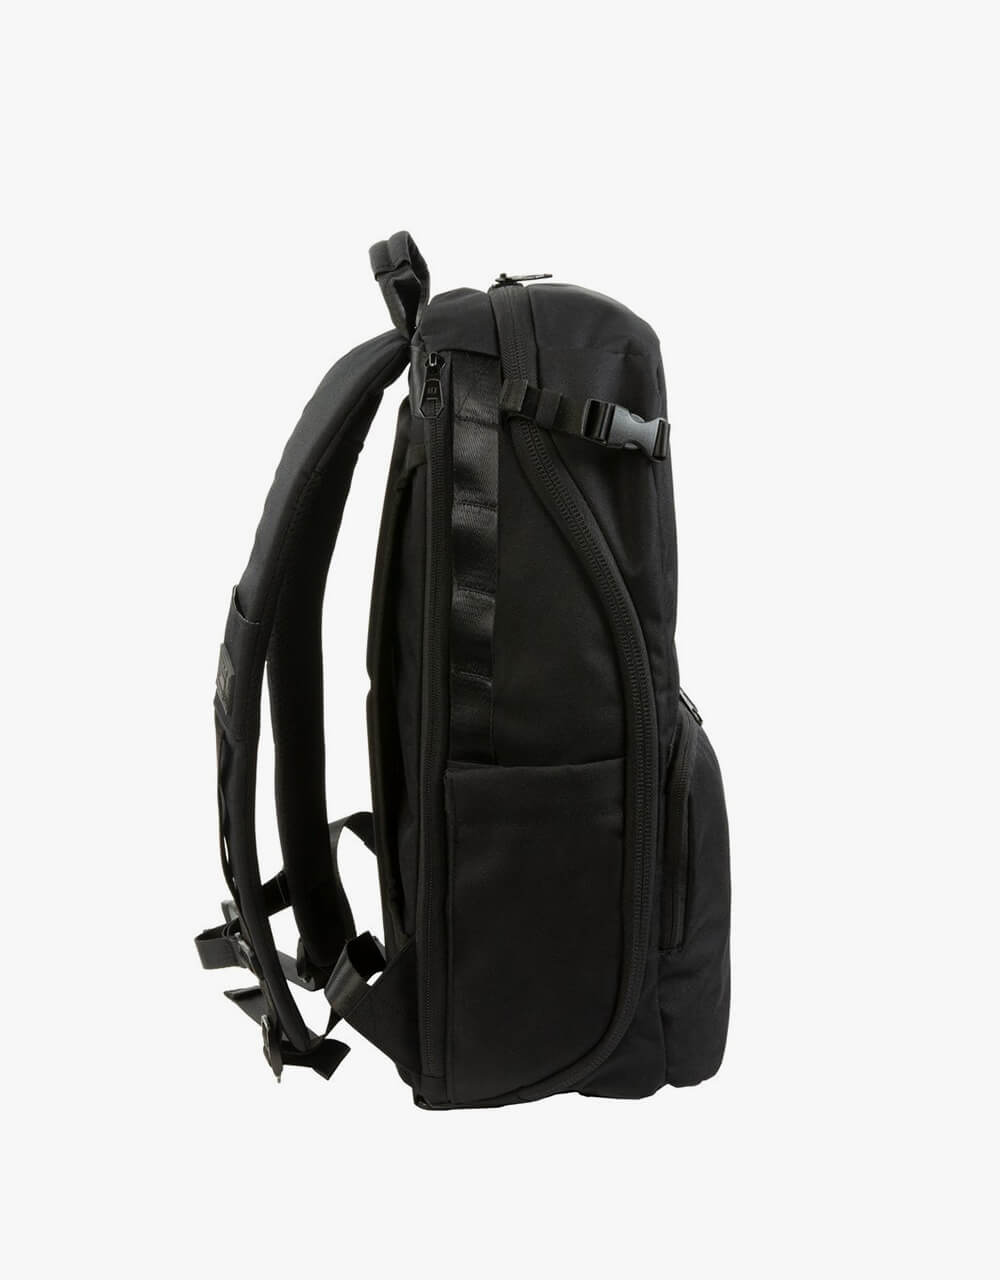 HEX Ranger Clamshell DSLR Camera Backpack - Black